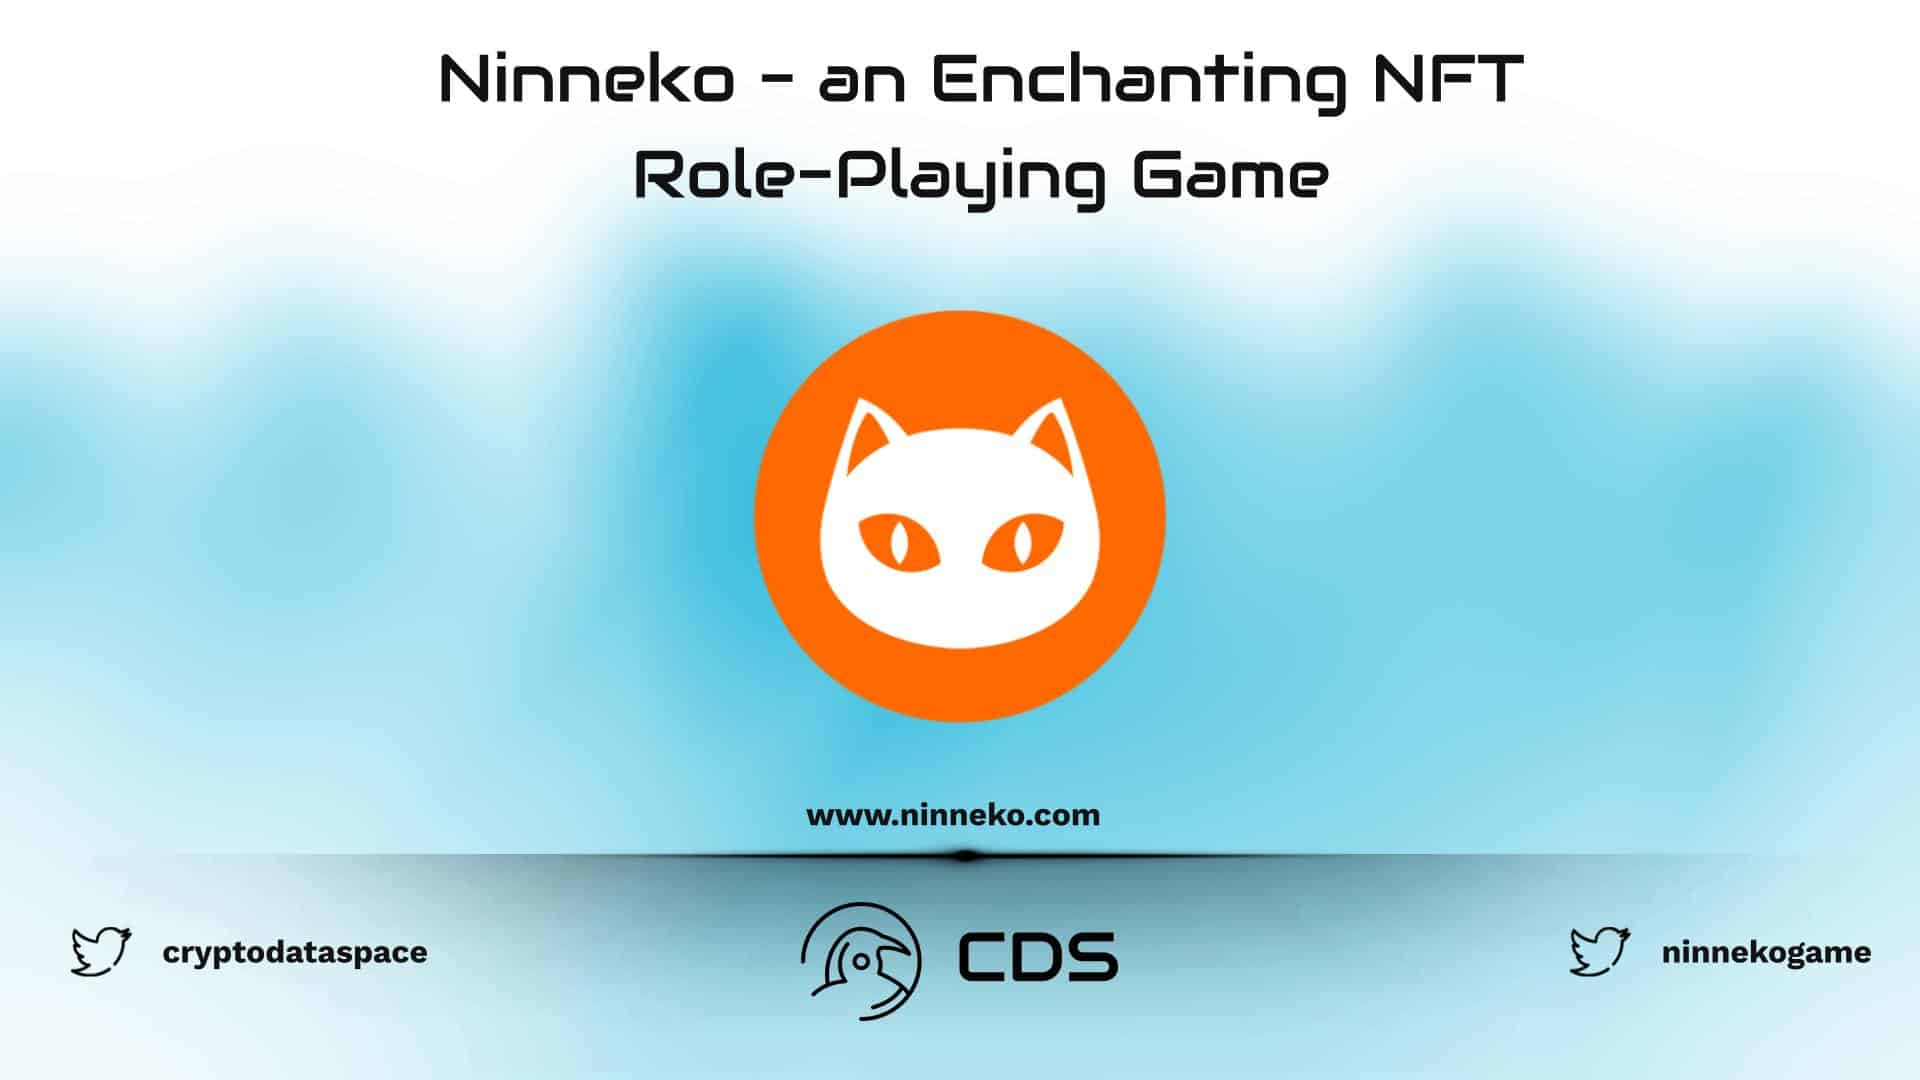 Ninneko - an Enchanting NFT Role-Playing Game